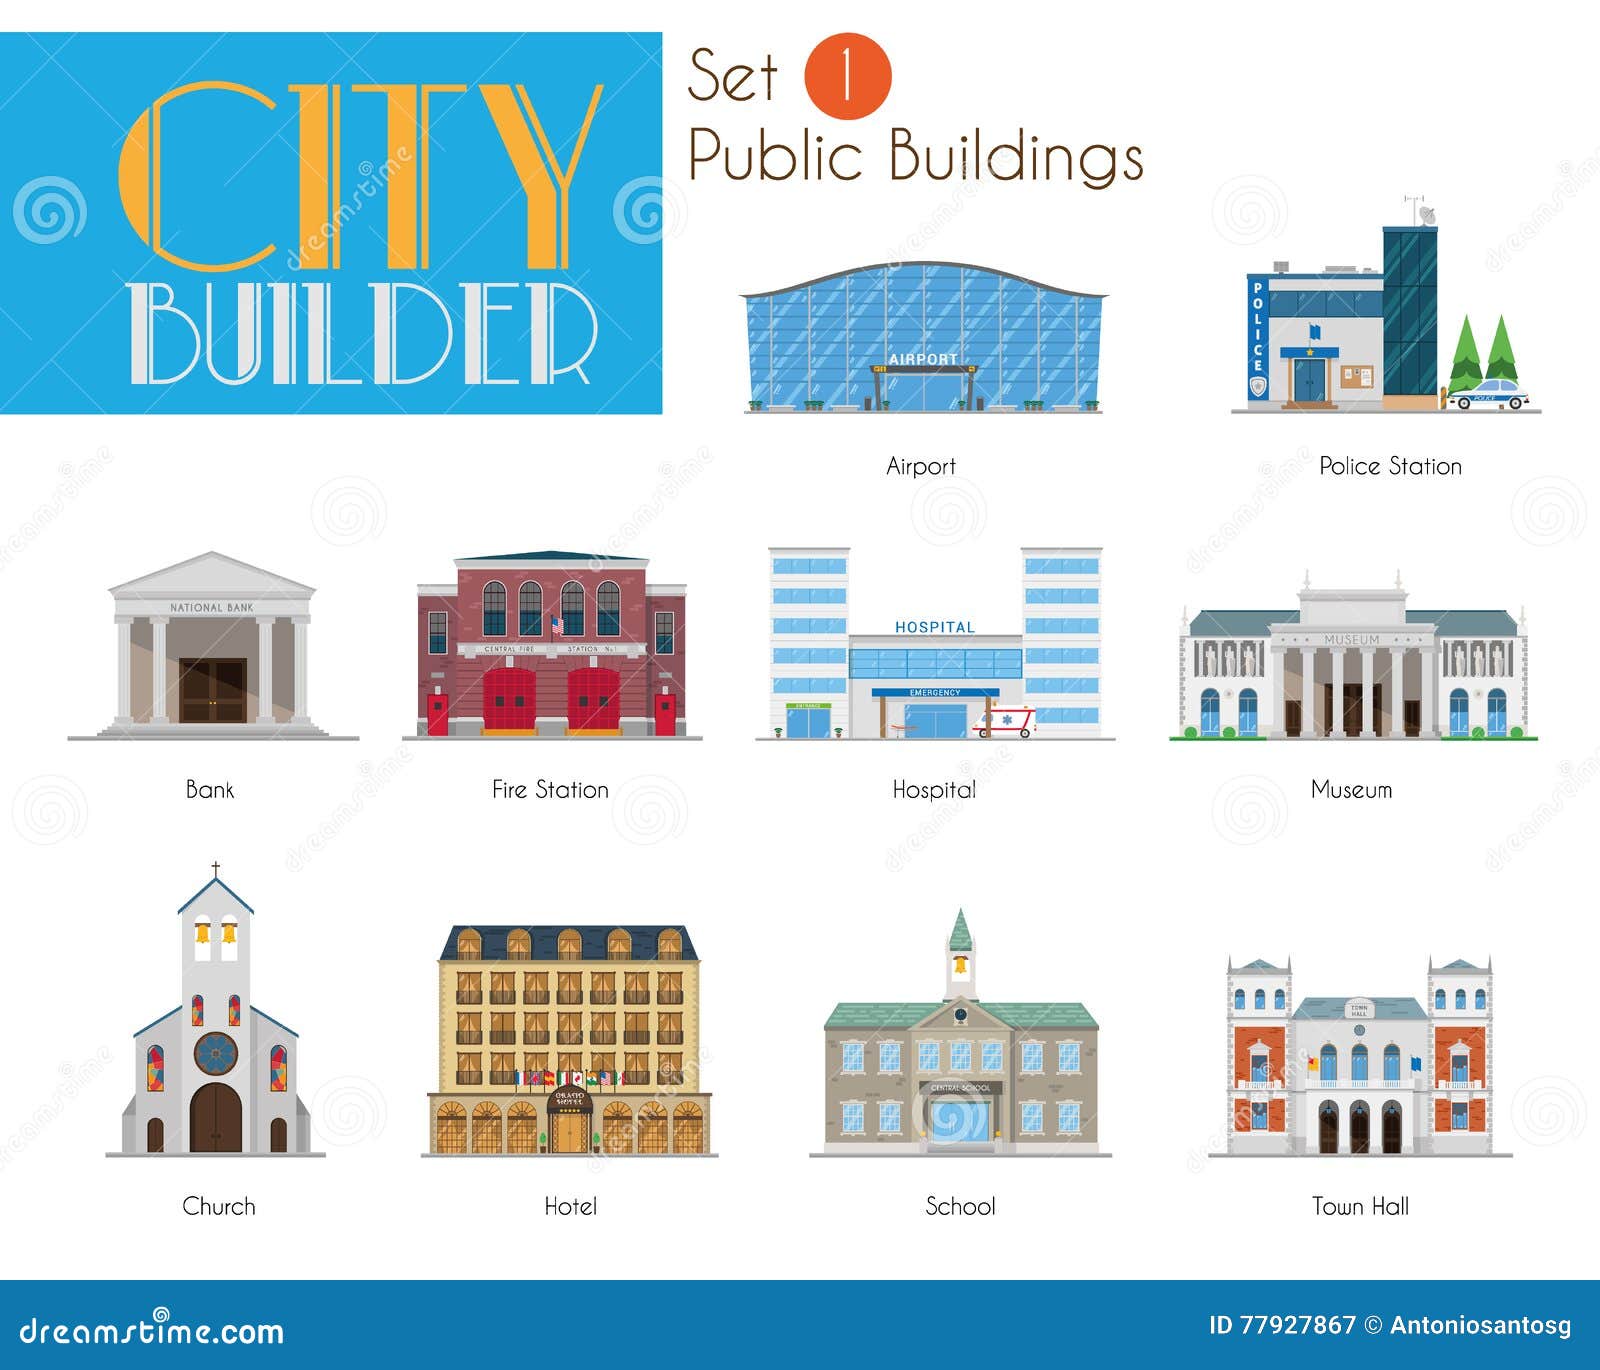 city builder set 1: public and municipal buildings